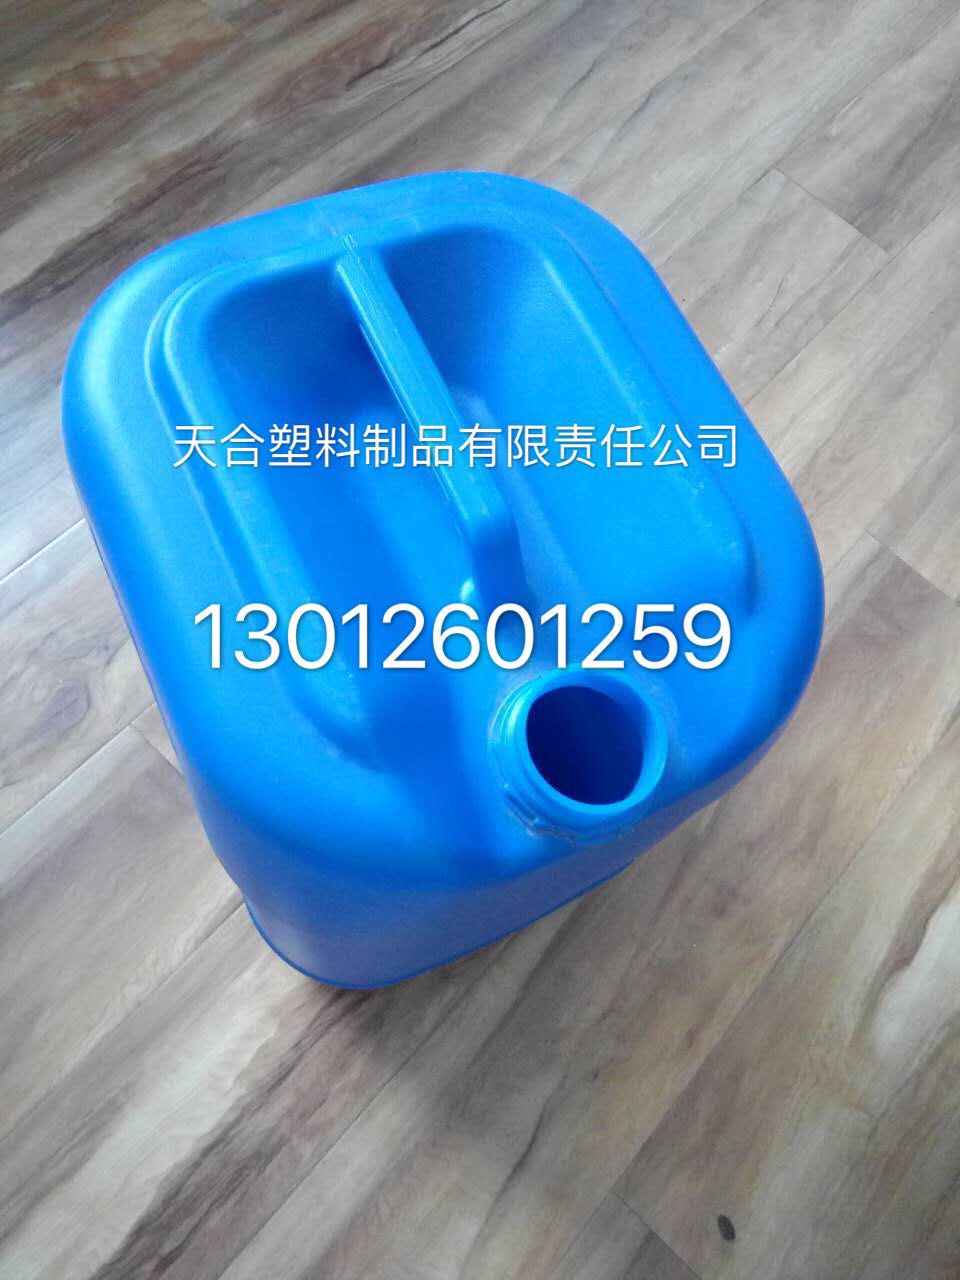    塑料桶25L生产厂家 防腐蚀 耐酸碱 图片